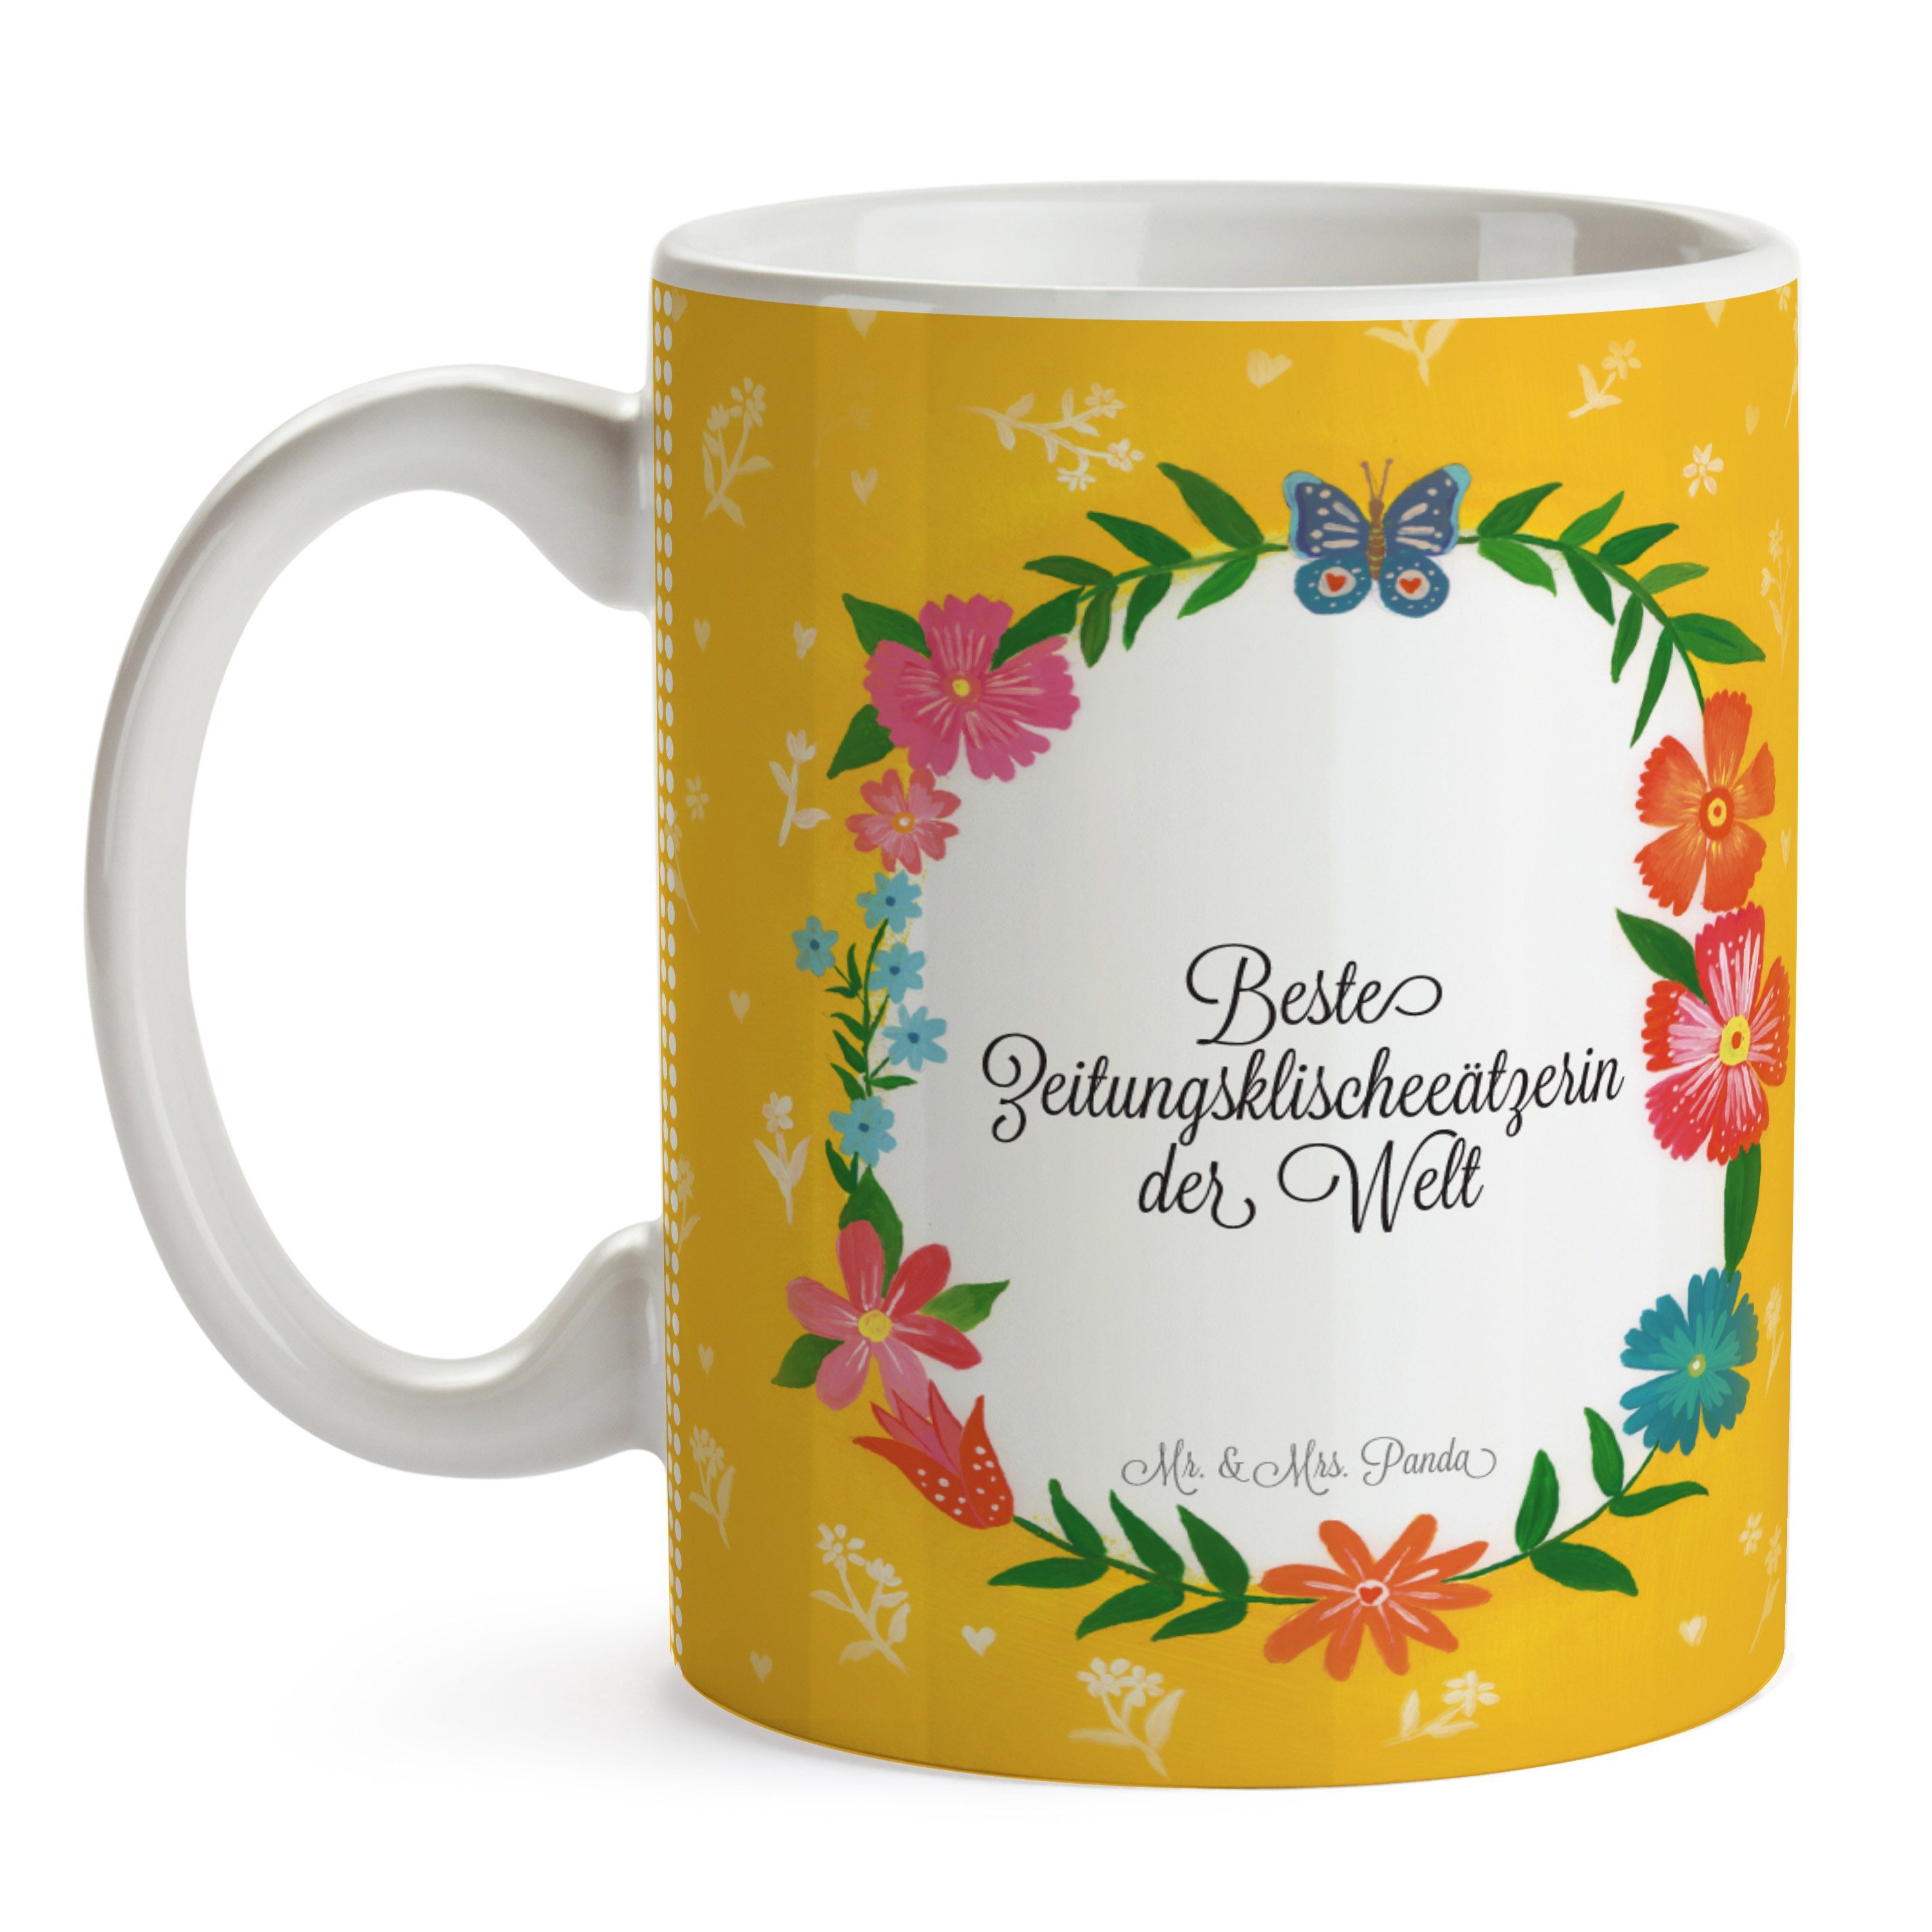 Mr. & Mrs. Panda Tasse Tasse, Rente, Motive, Kaffe, Geschenk, Zeitungsklischeeätzerin Tasse Keramik 